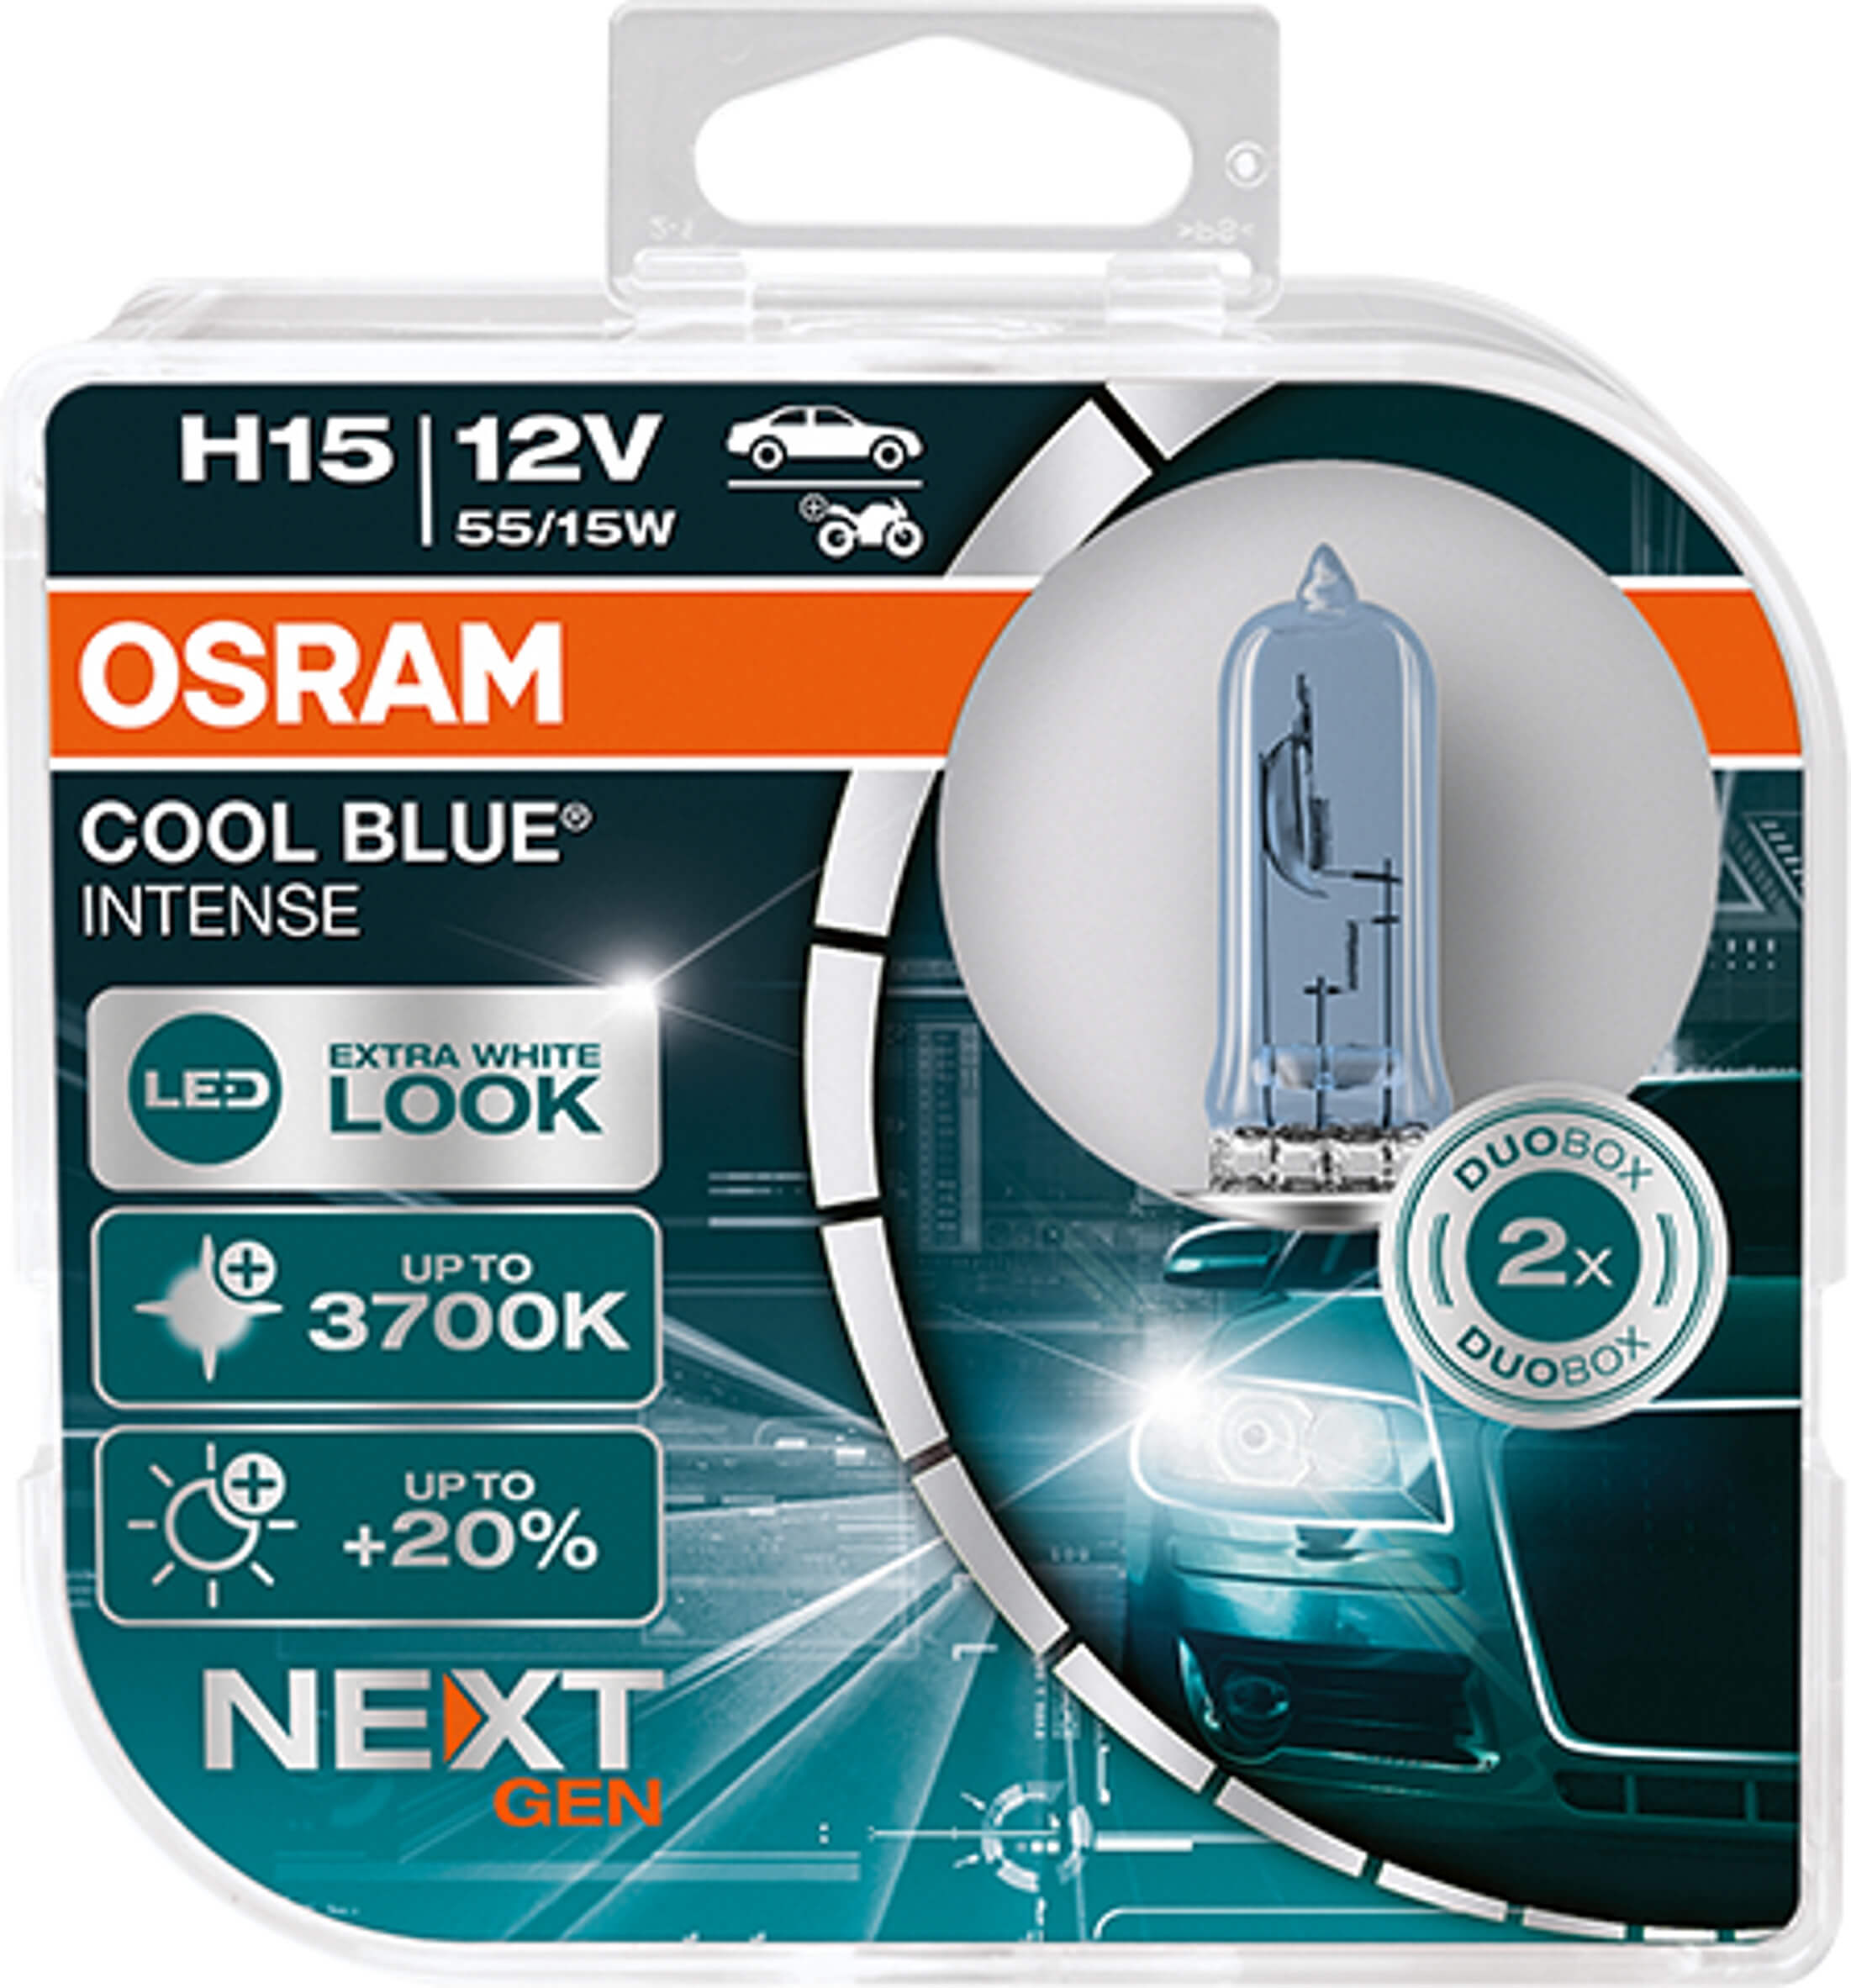 ΛΑΜΠΑ OSRAM H15 12V 15/55W (64176CBN-HCB) Cool Blue INTENSE NextGeneration 3700K +100% 2TMX